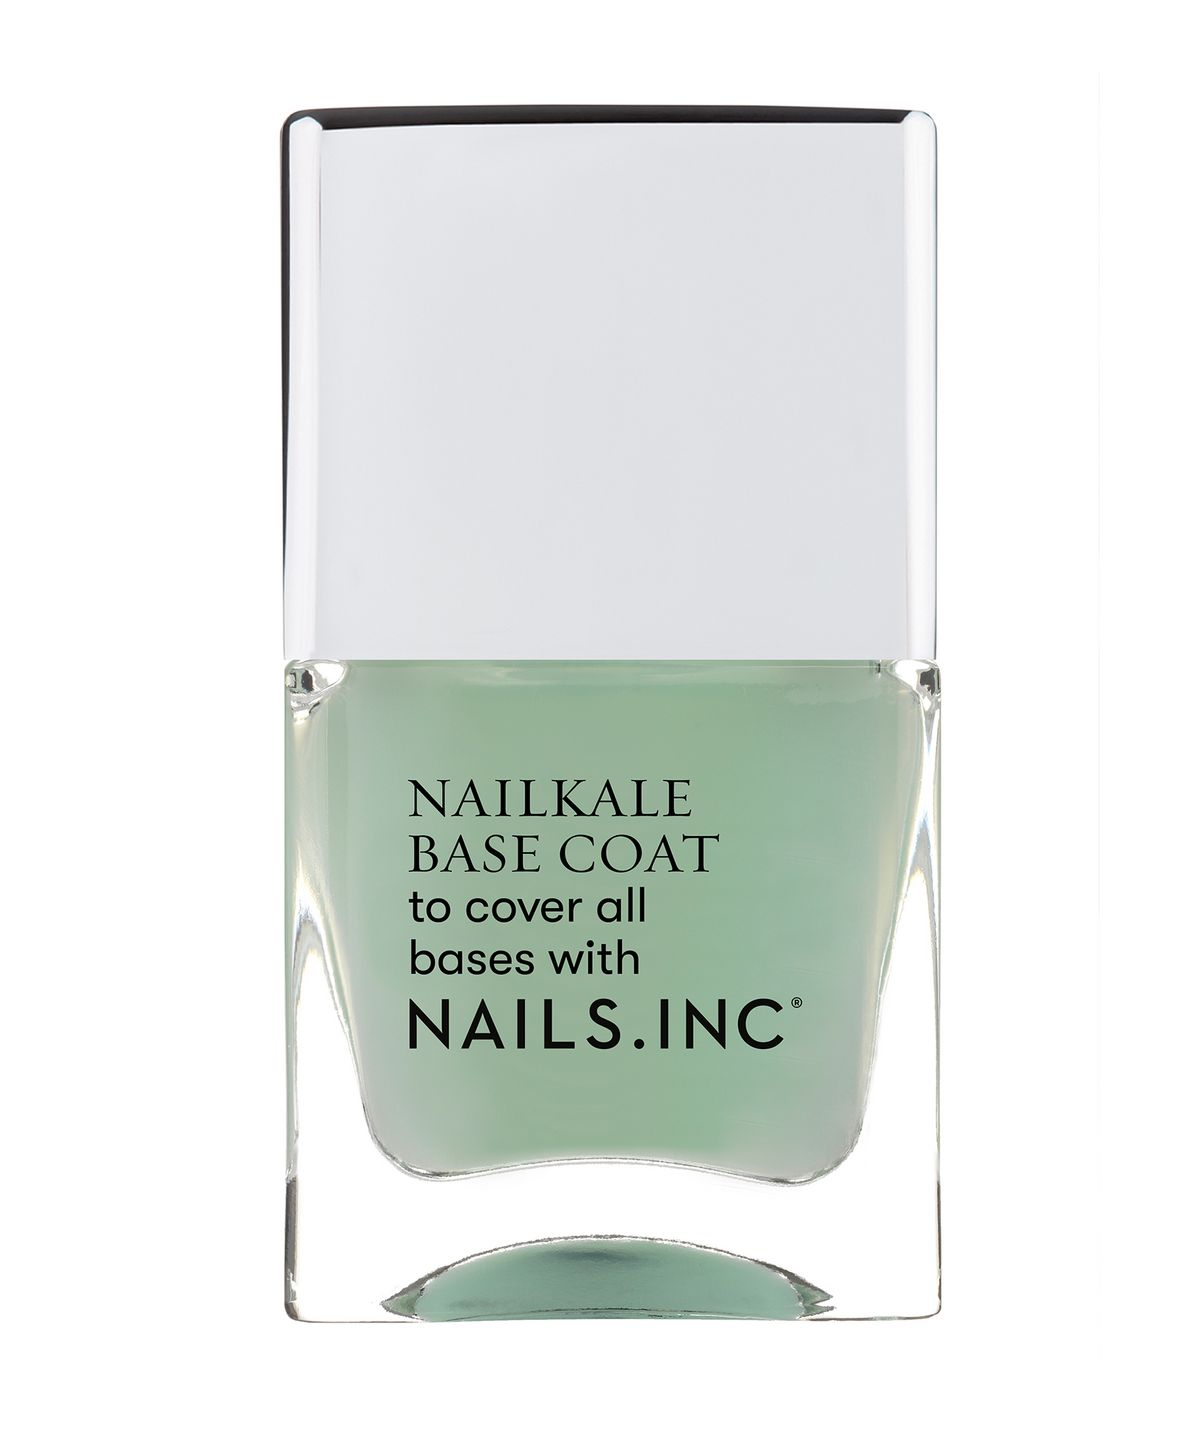 Nails Inc. Nail Kale Superfood Base Coat